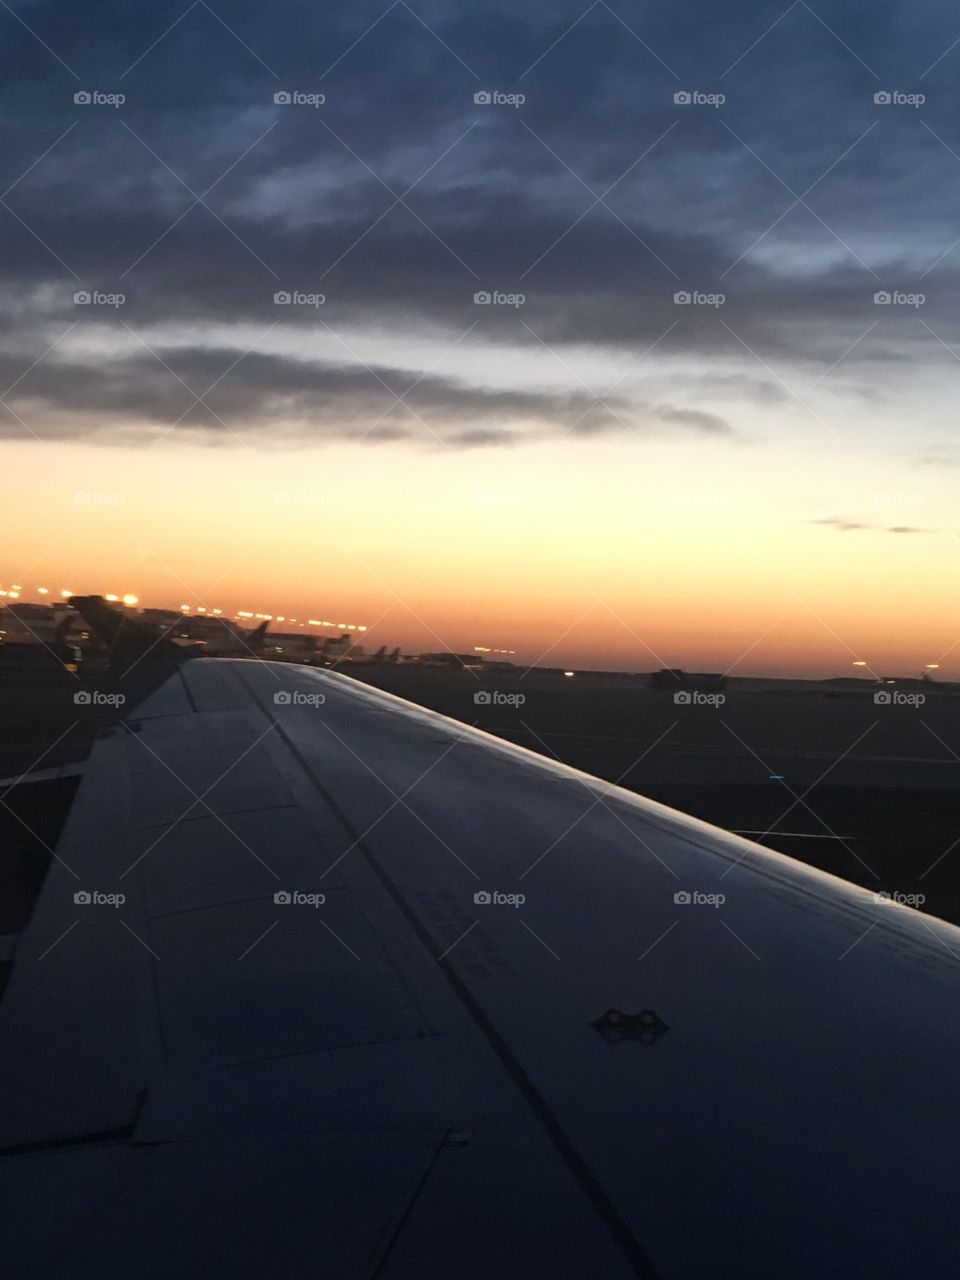 Airplane sun rise